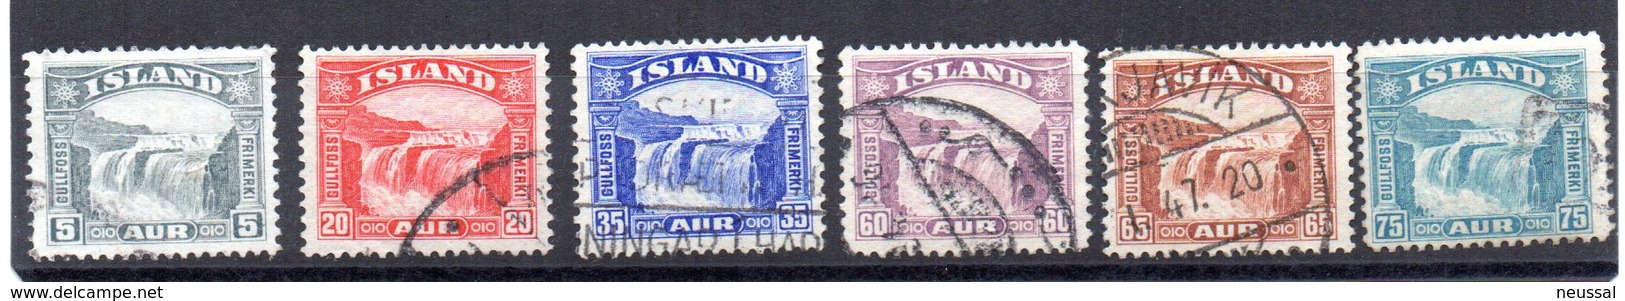 Serie Nº 139/44 Islandia.- - Usados